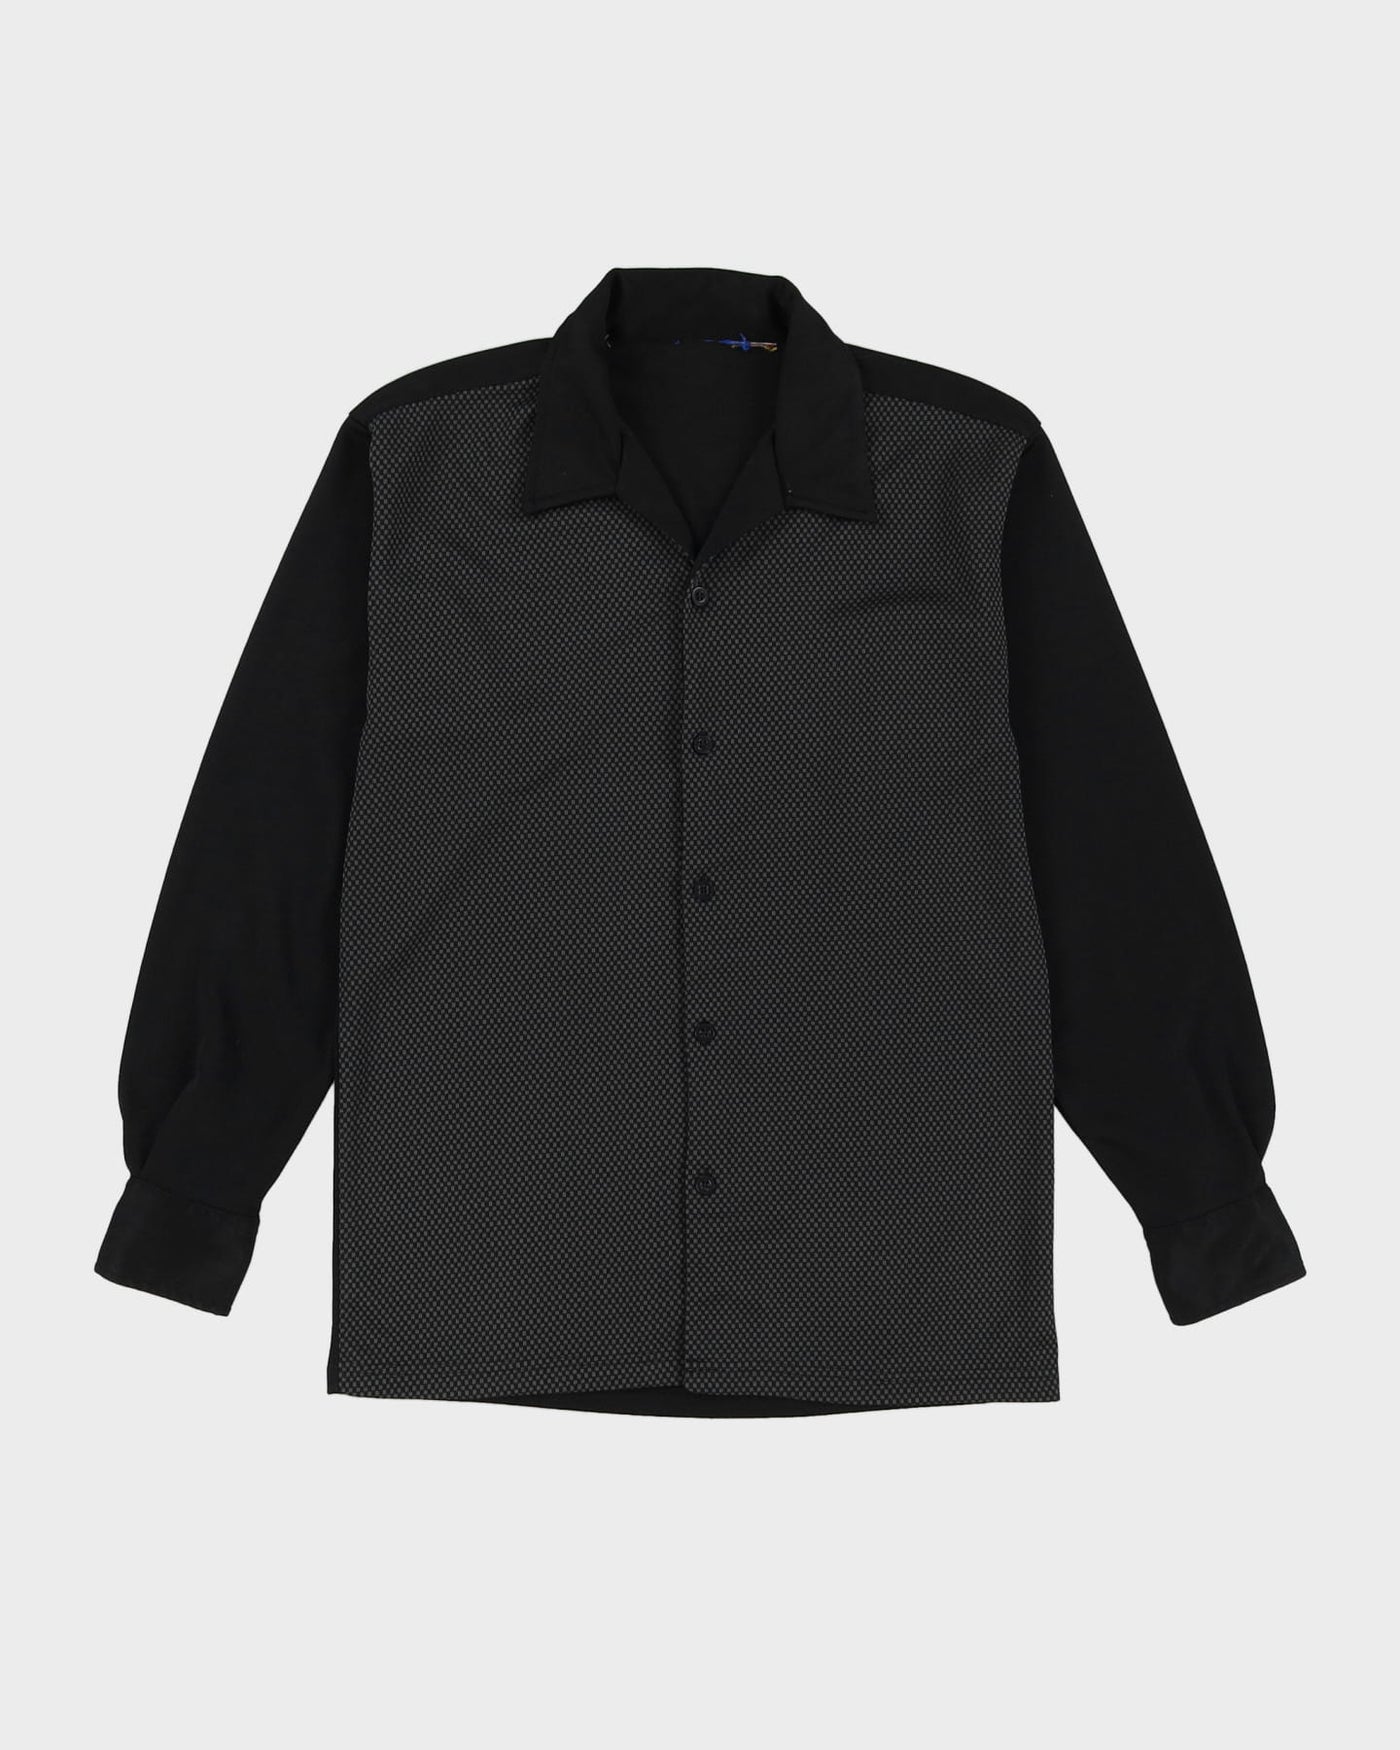 Vintage 70s Black Patterned Long-Sleeve Shirt - M